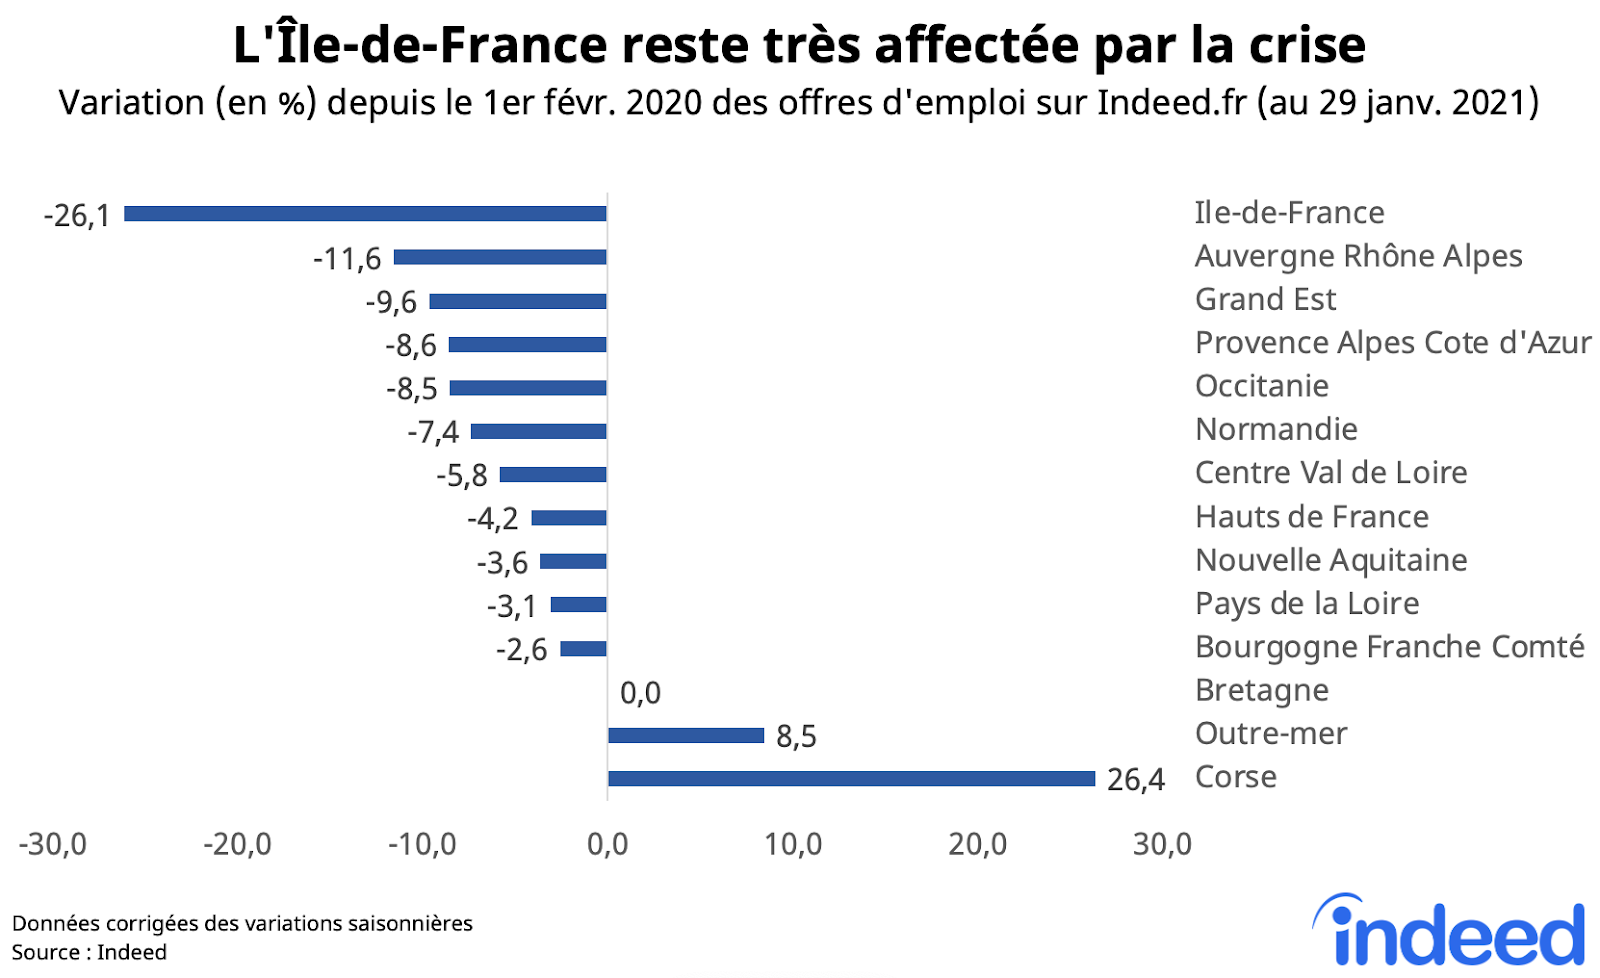 L'Île-de-France reste très affectée par la crise